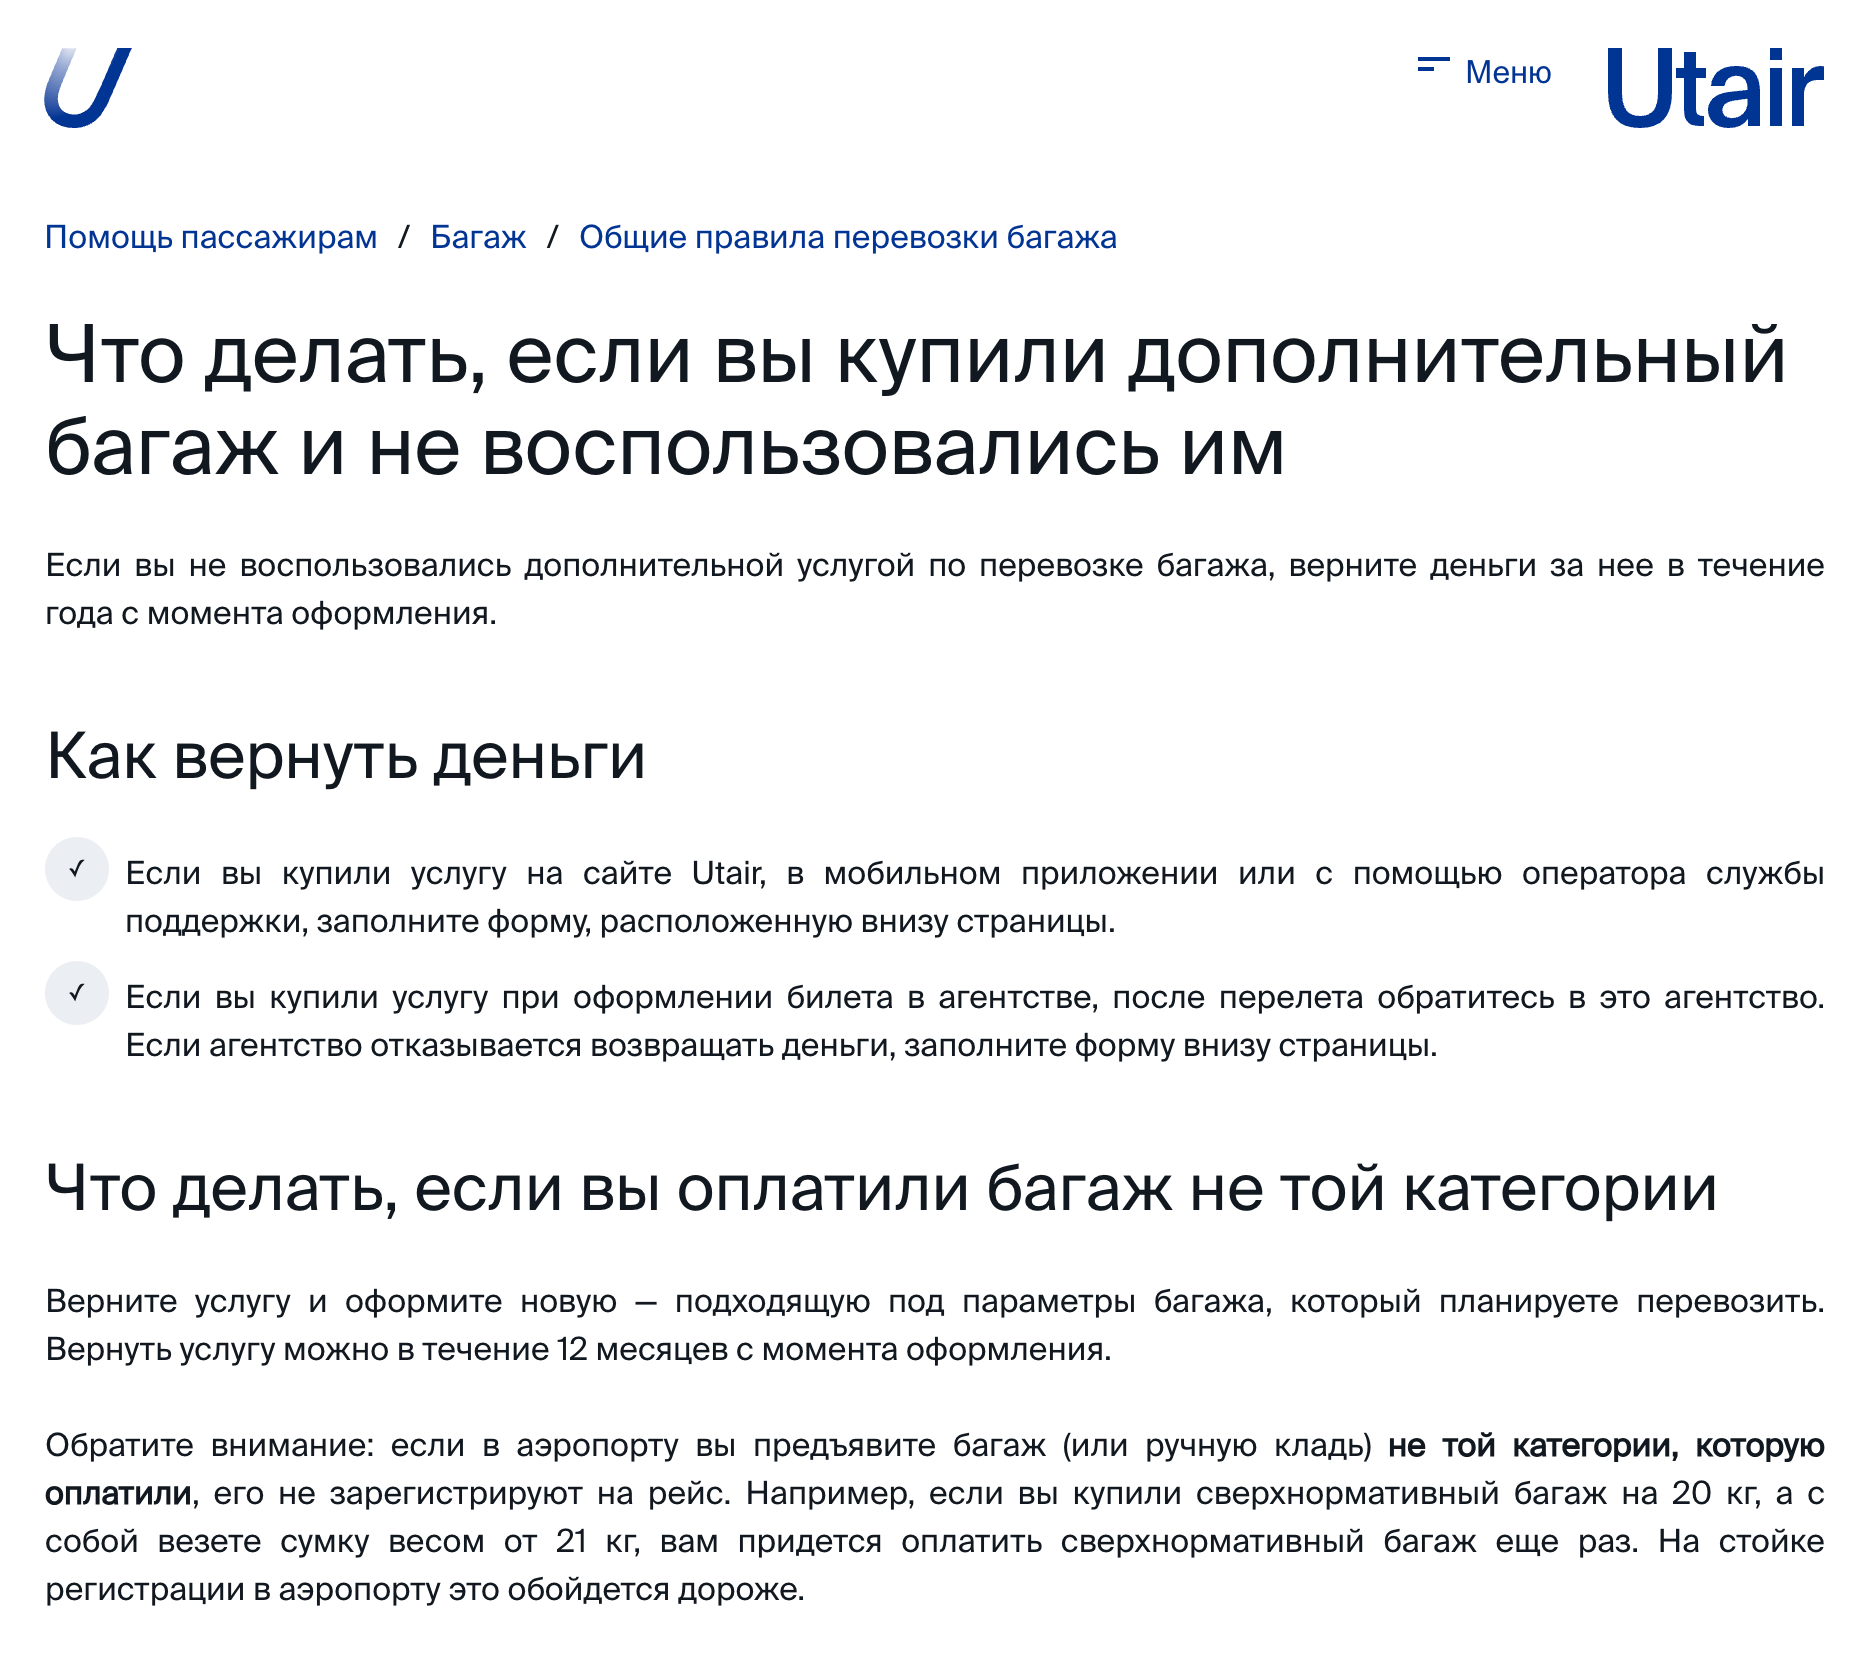 Utair предлагает вернуть деньги за неоказанную услугу в течение года. Источник: utair.ru